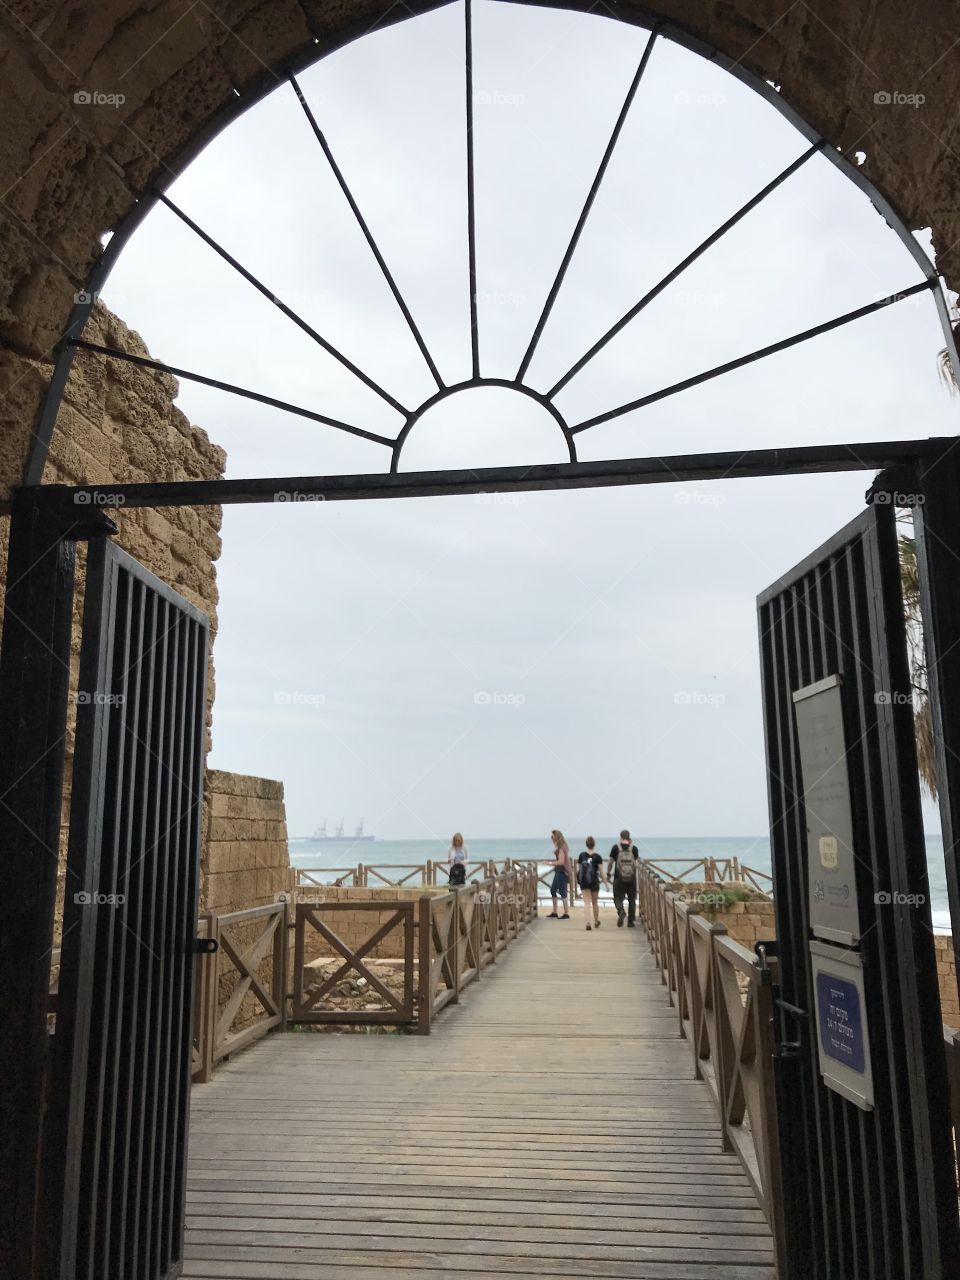 Caesarea 